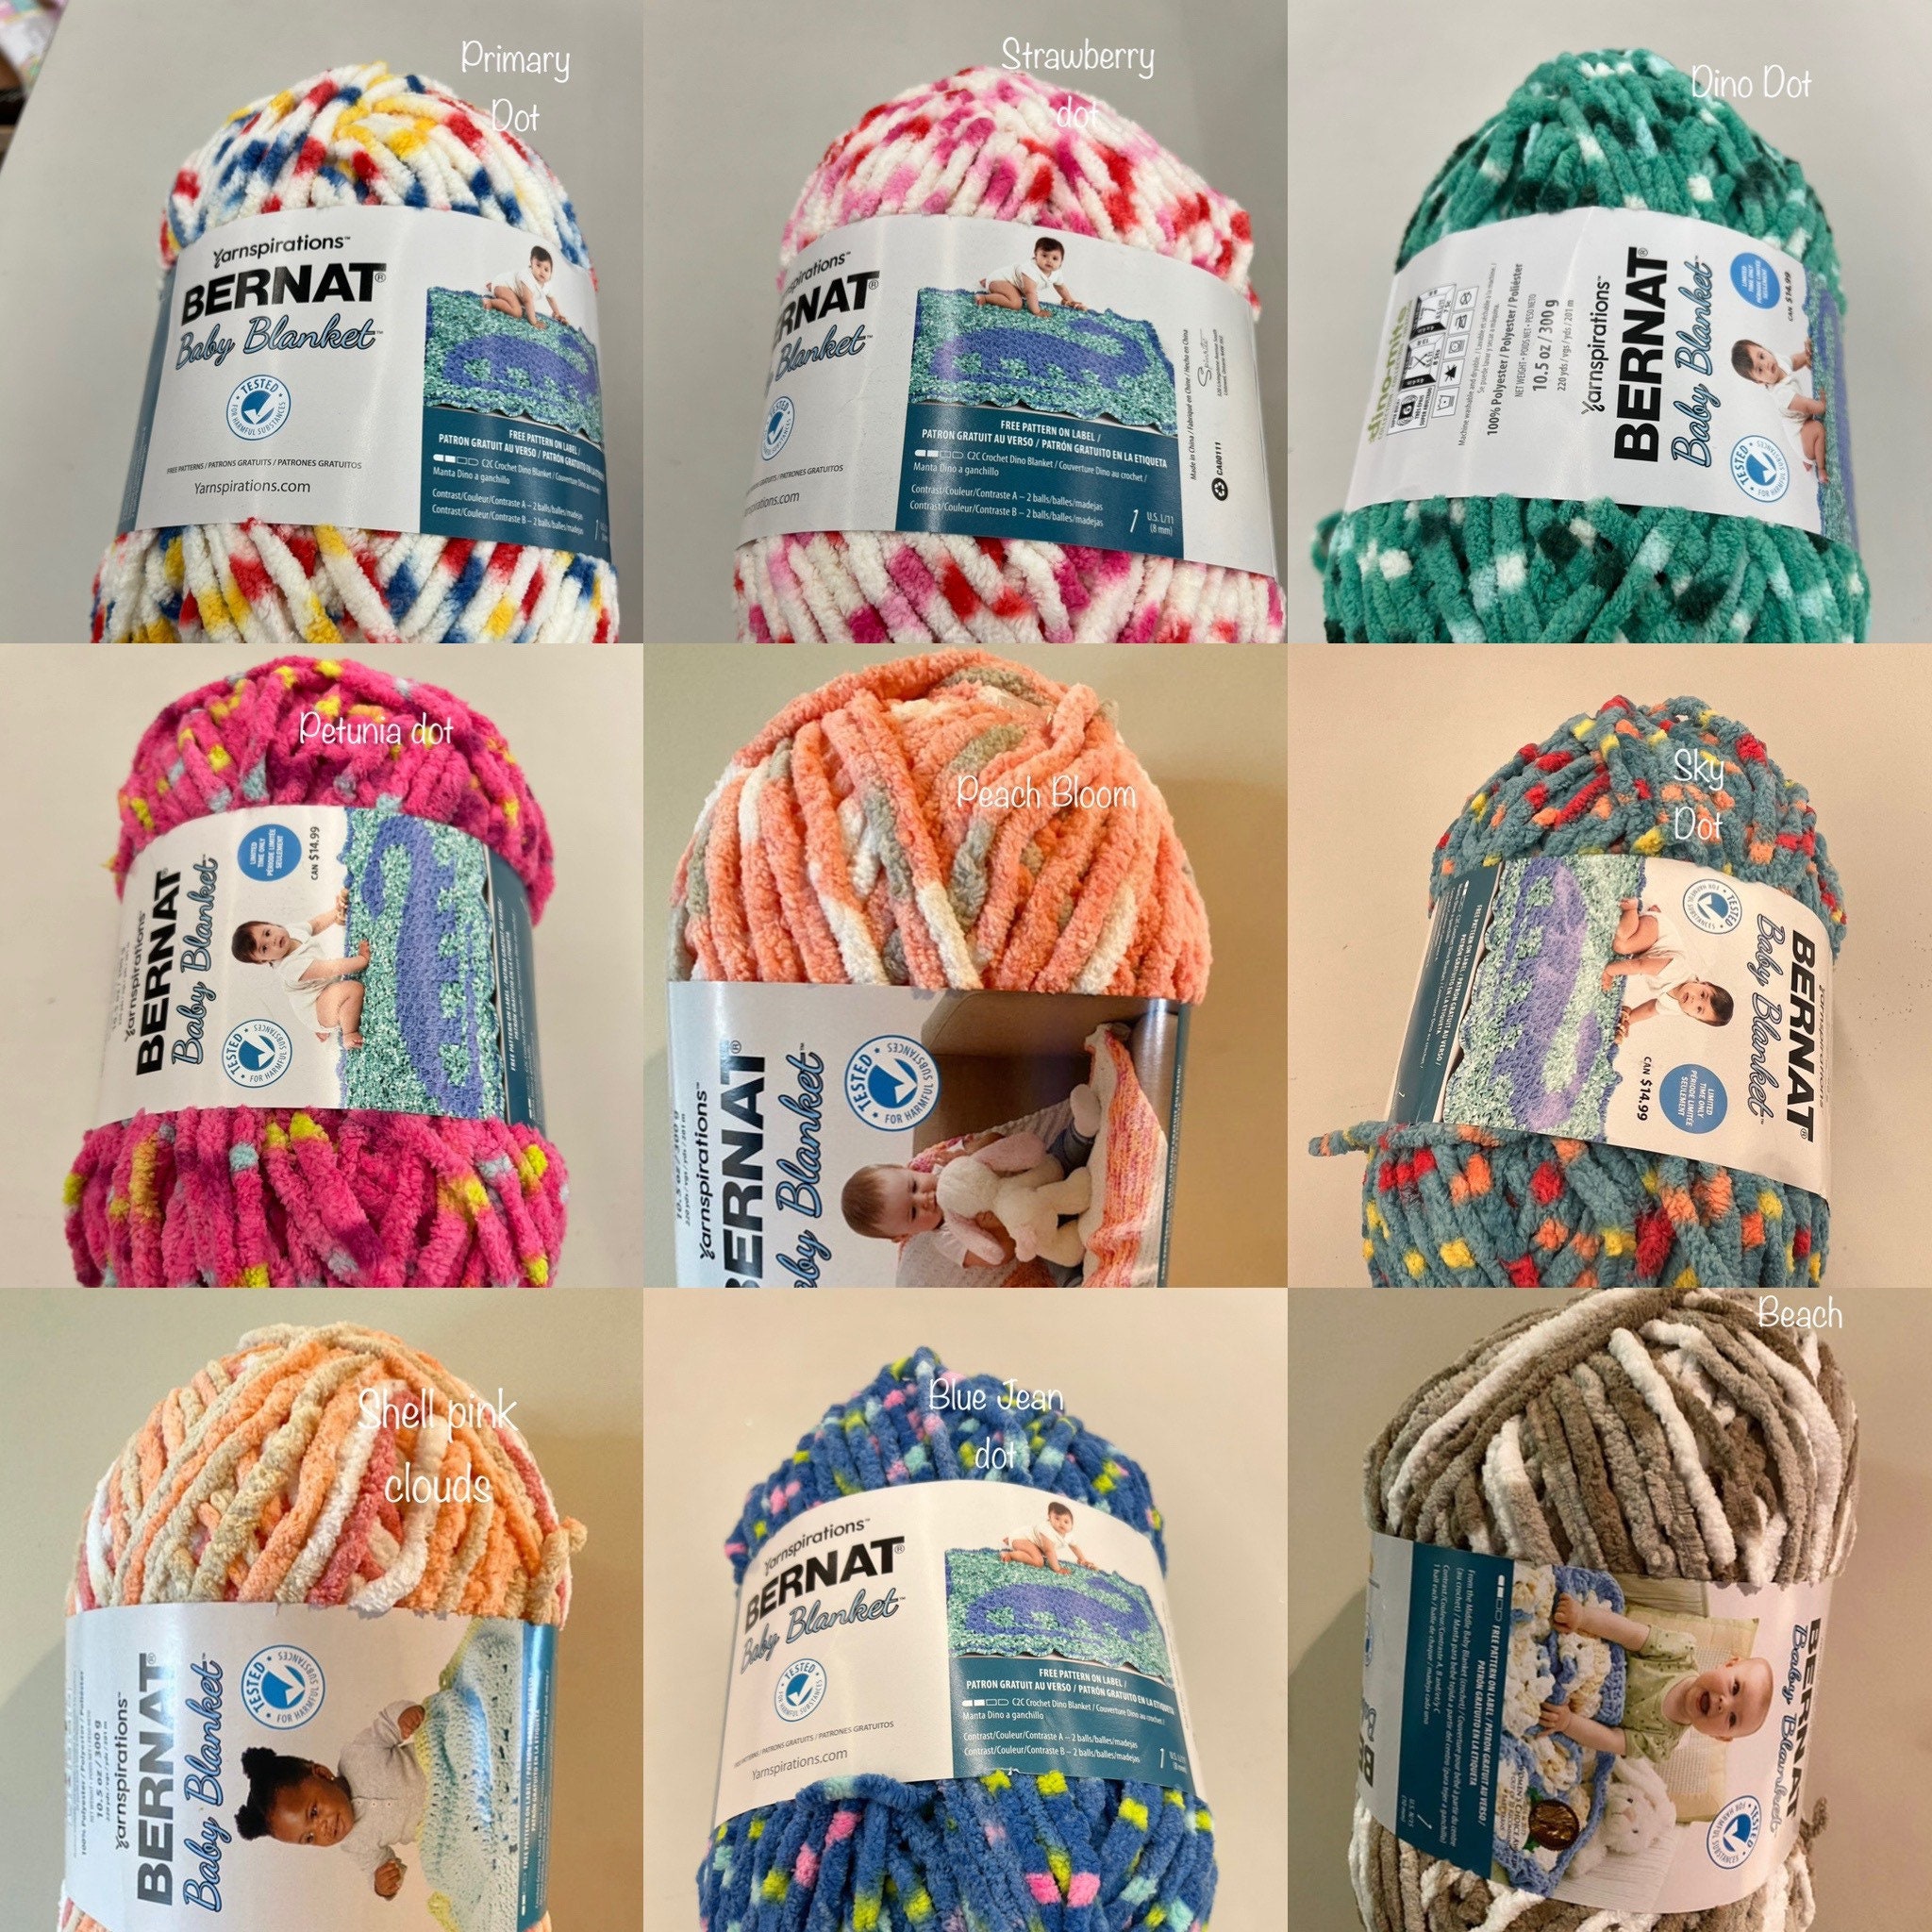 Bernat Baby Blanket Yarn-Peachy, 1 count - Pick 'n Save